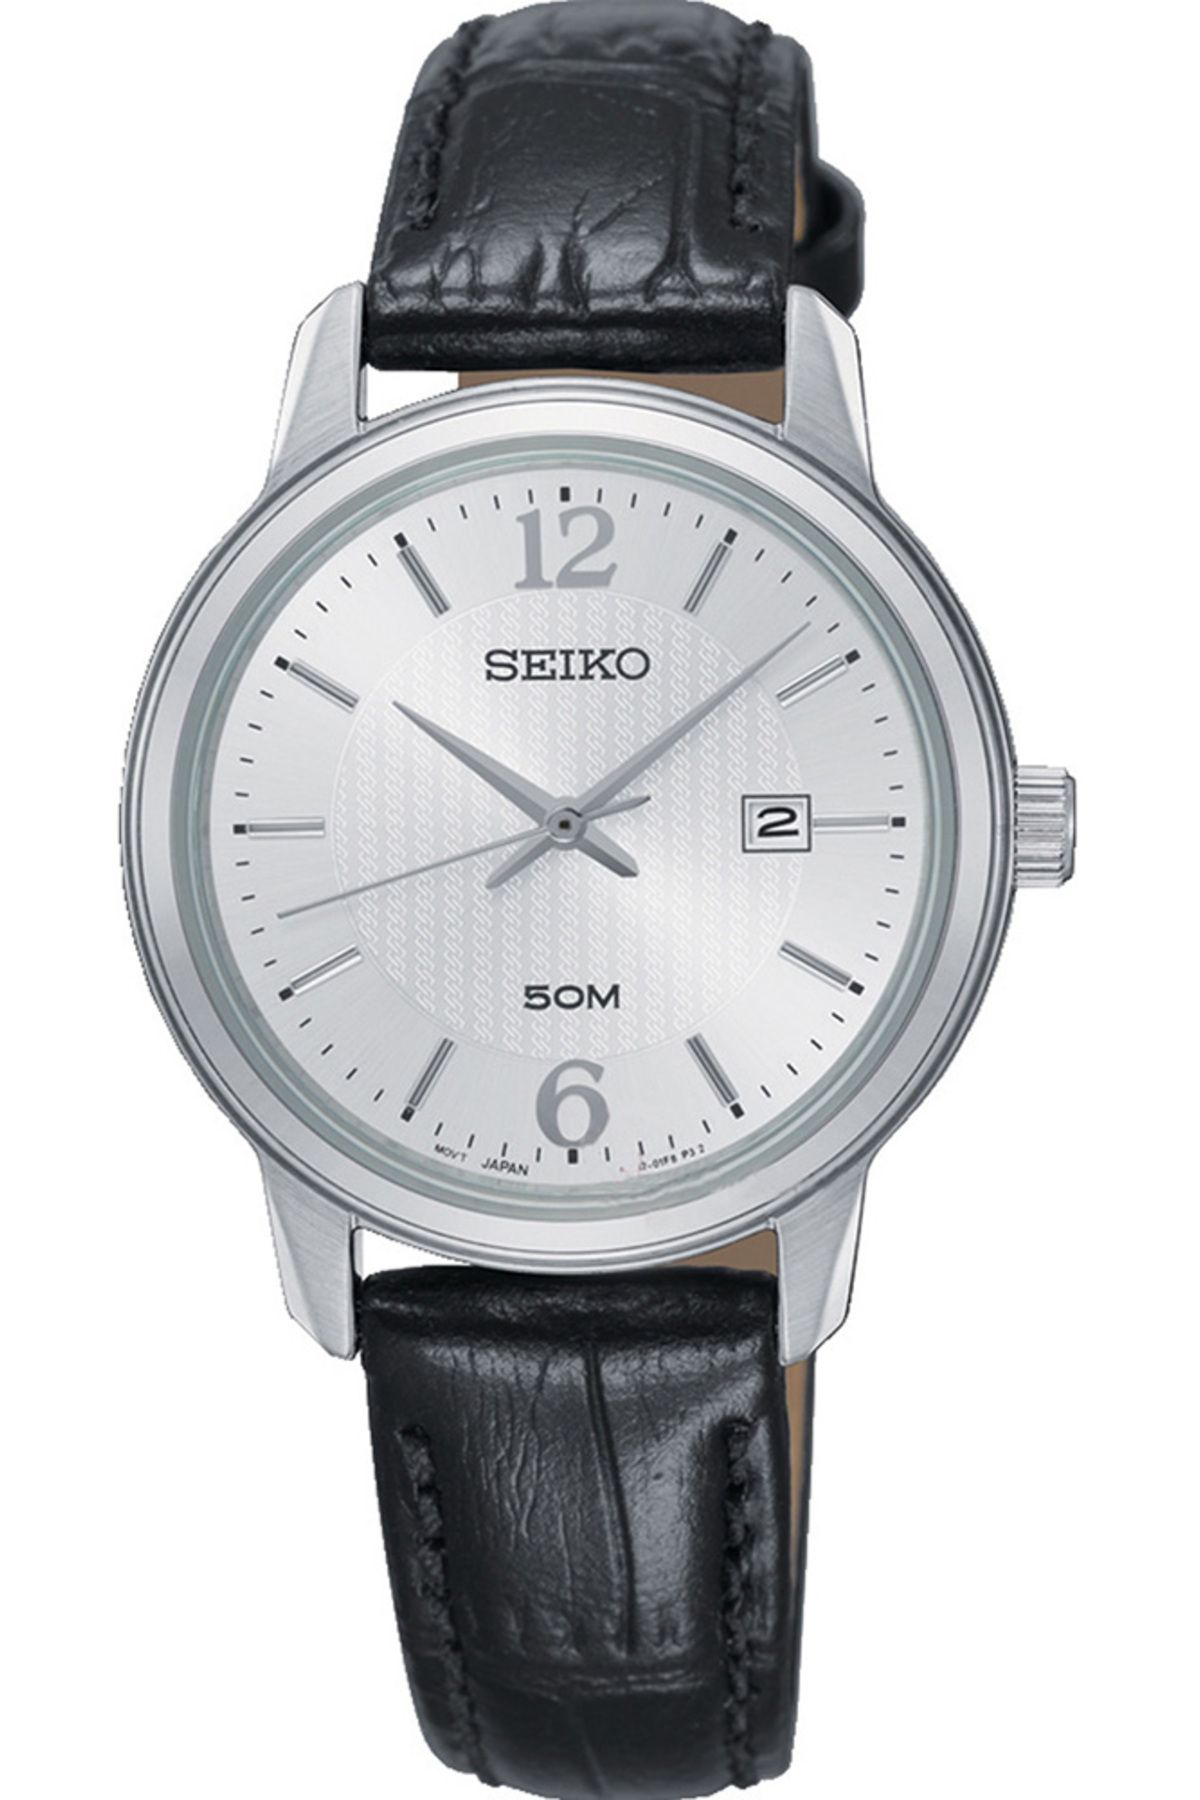 Seiko Sur659p